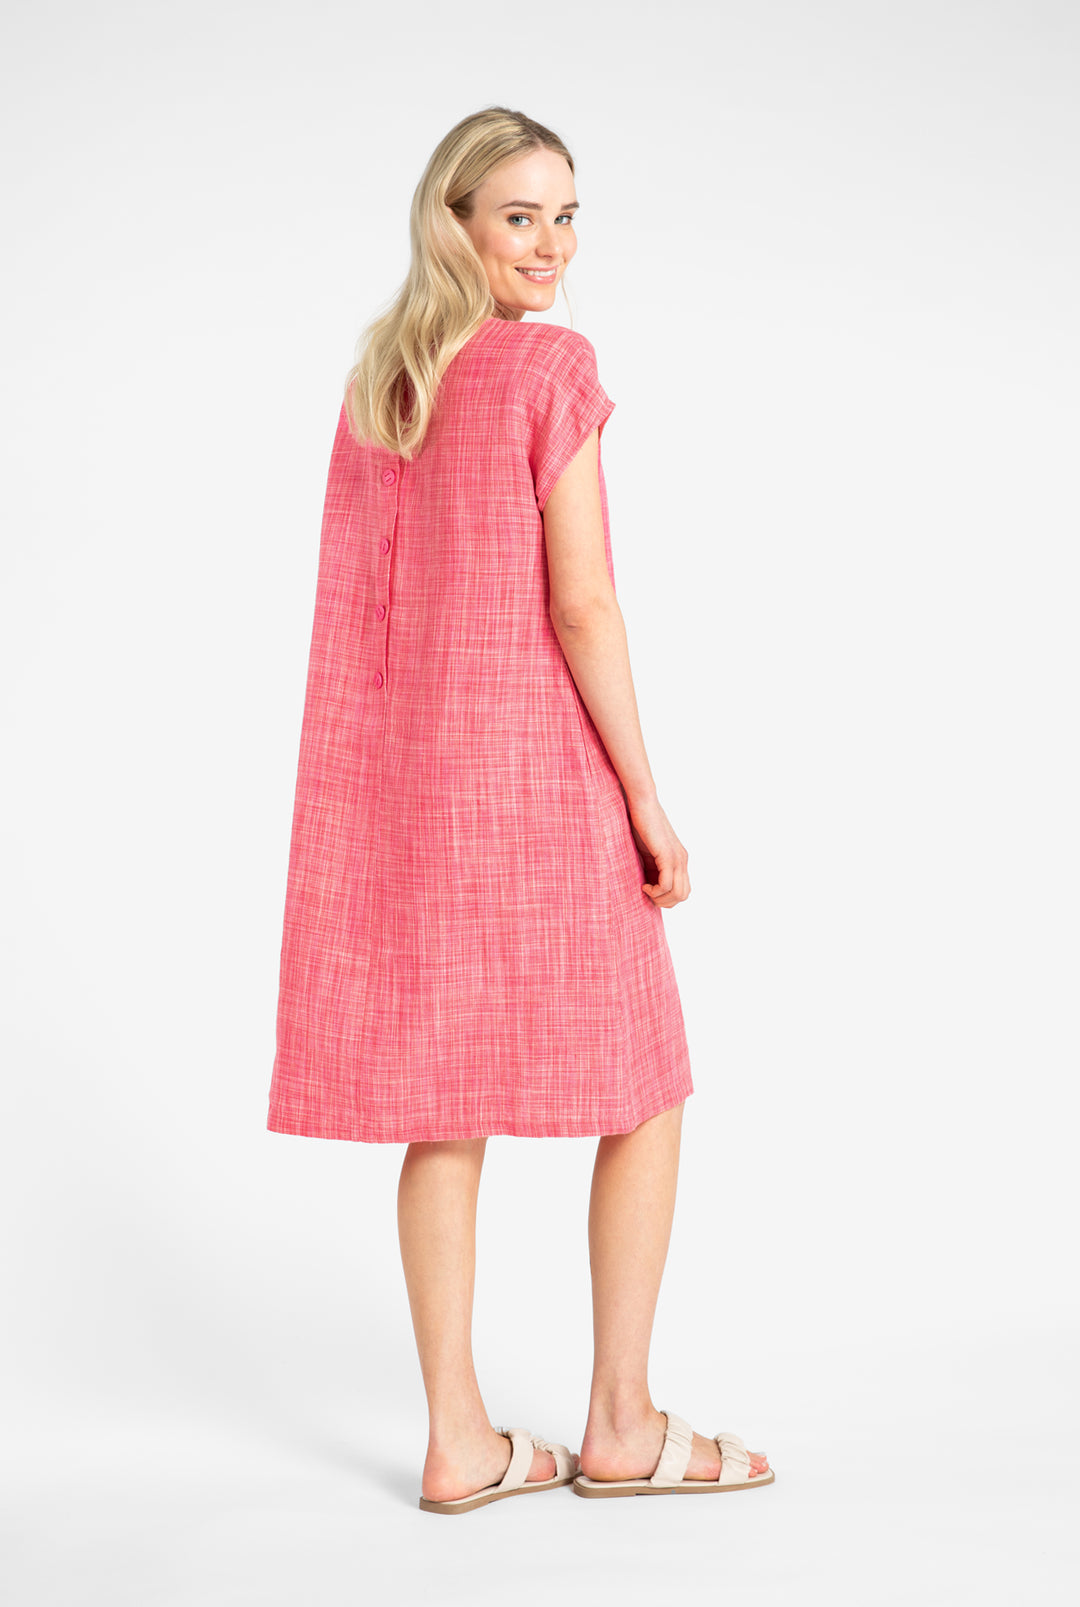 Kuusama Beck Linen  Dress, Pink Melange. L, XL